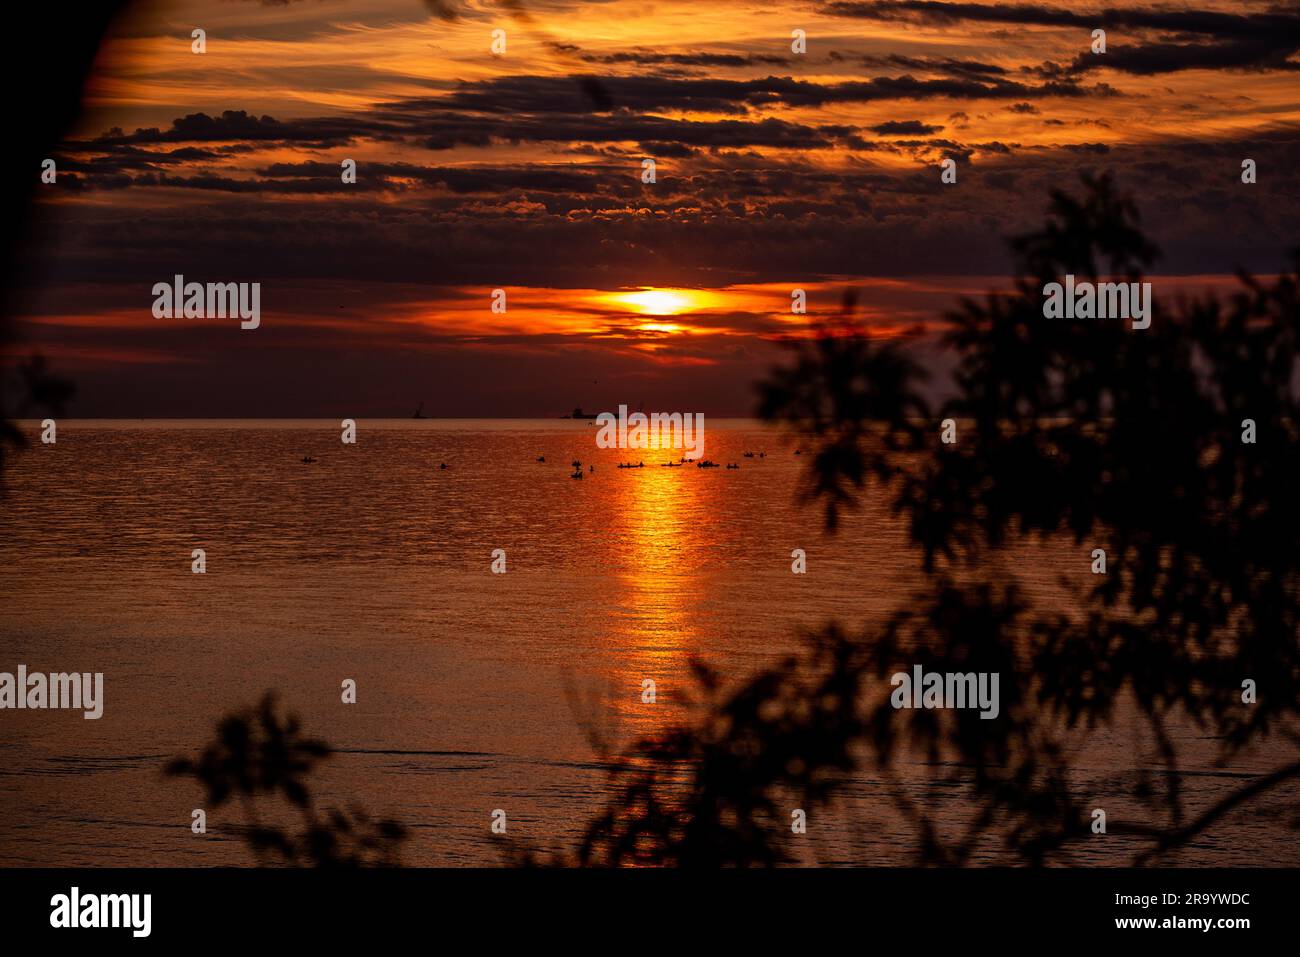 Silhouette de personnes sur les panneaux SUP à l'horizon de la mer au lever du soleil orange. Passe-temps actif sur l'eau. état de solde. santé mentale. Loisirs actif Banque D'Images